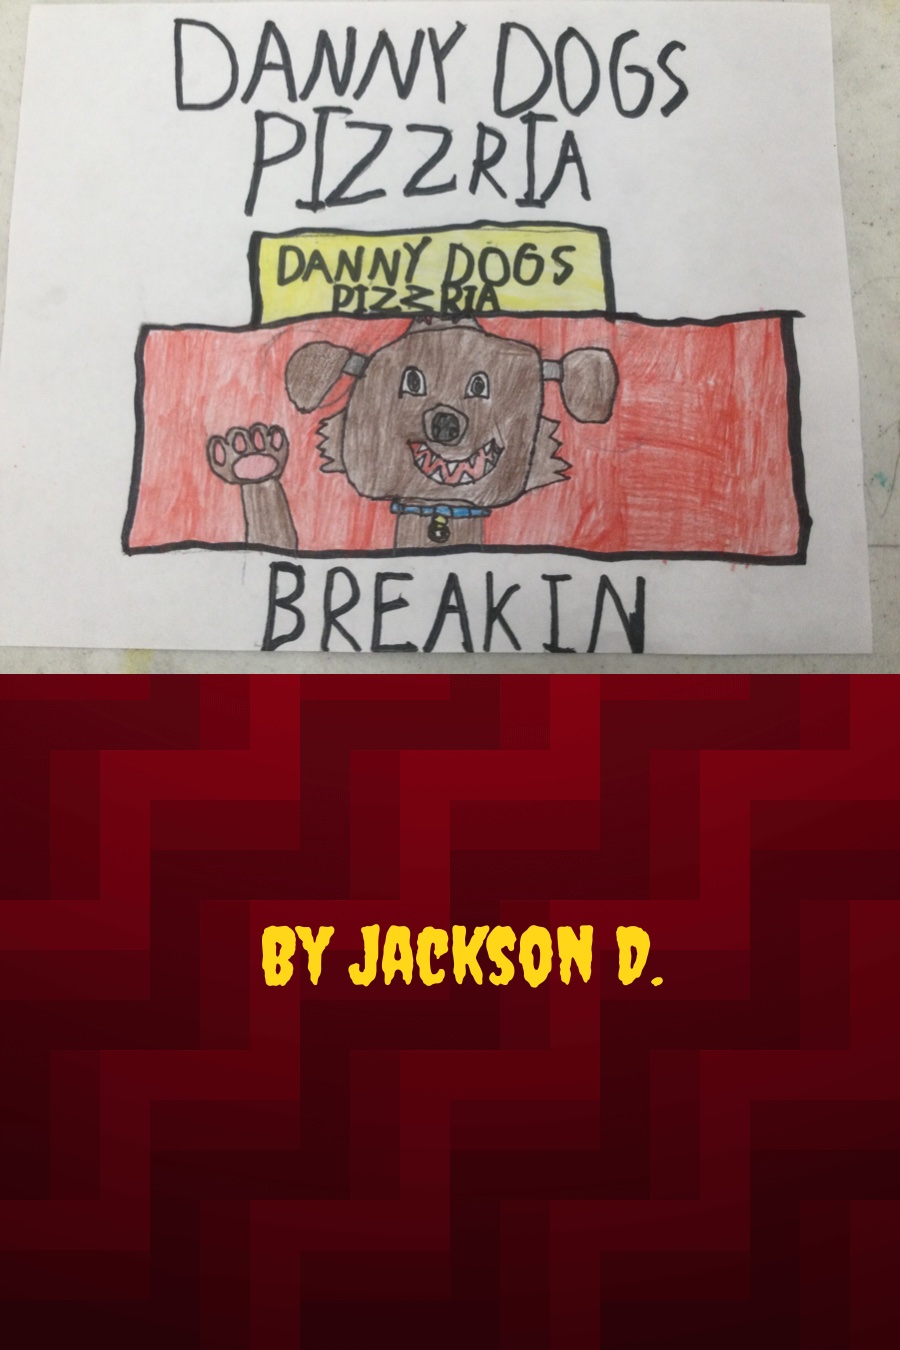 Danny Dogs Pizzeria Break-in by Jackson D